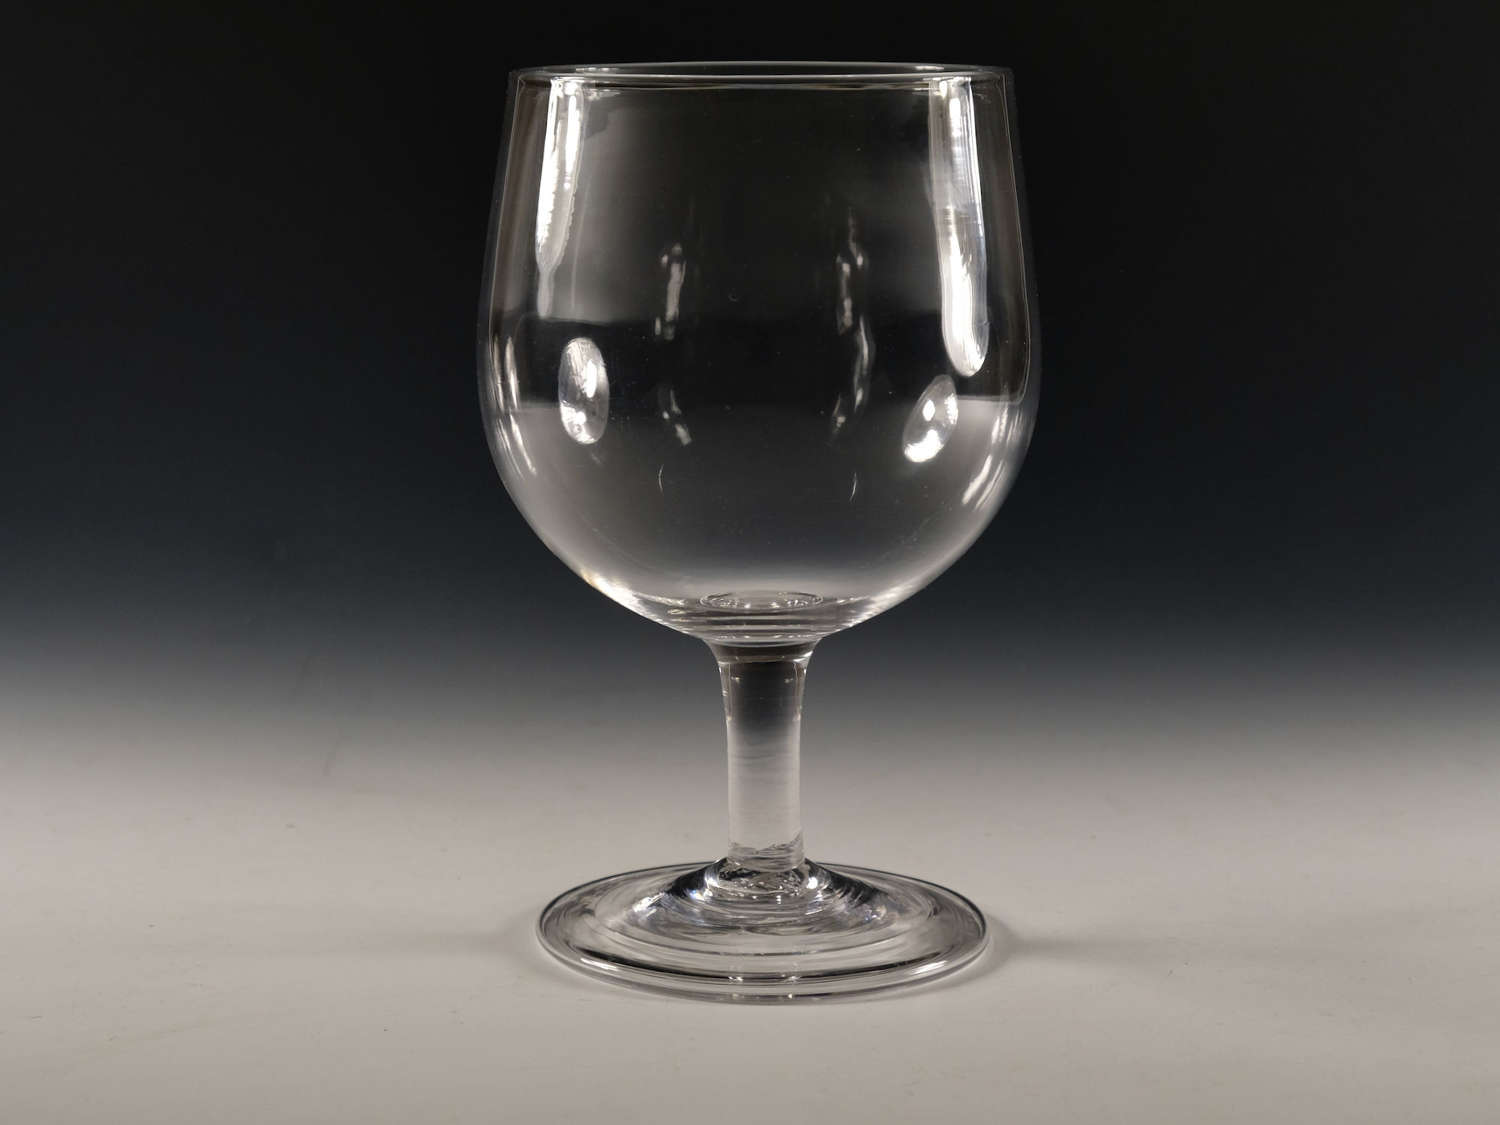 Antique glass - plain stem wine goblet English c1770